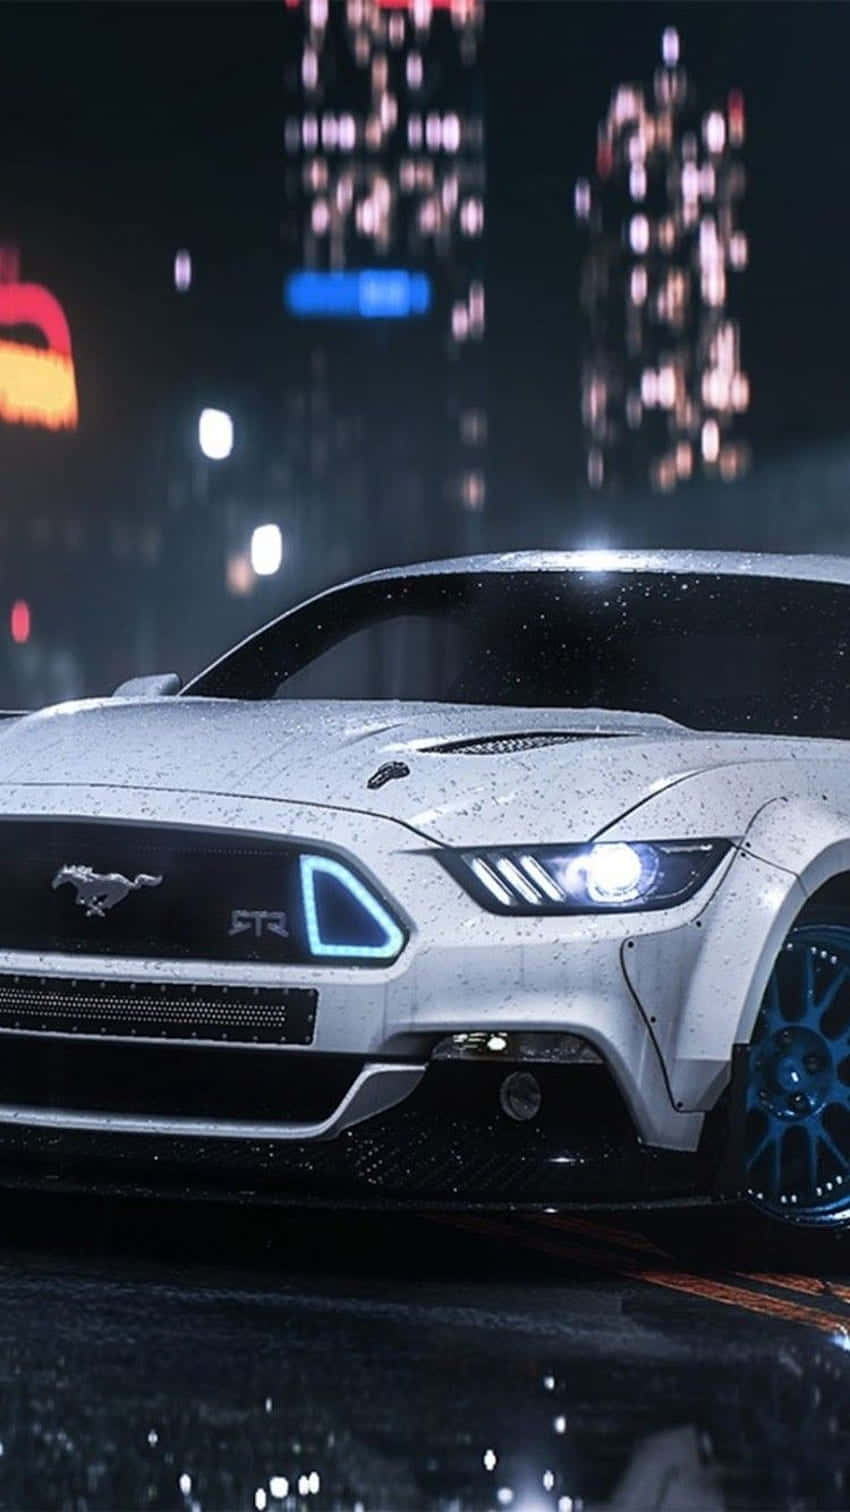 Pixel3 Bakgrundsbild Med Need For Speed I Vit Mustang.